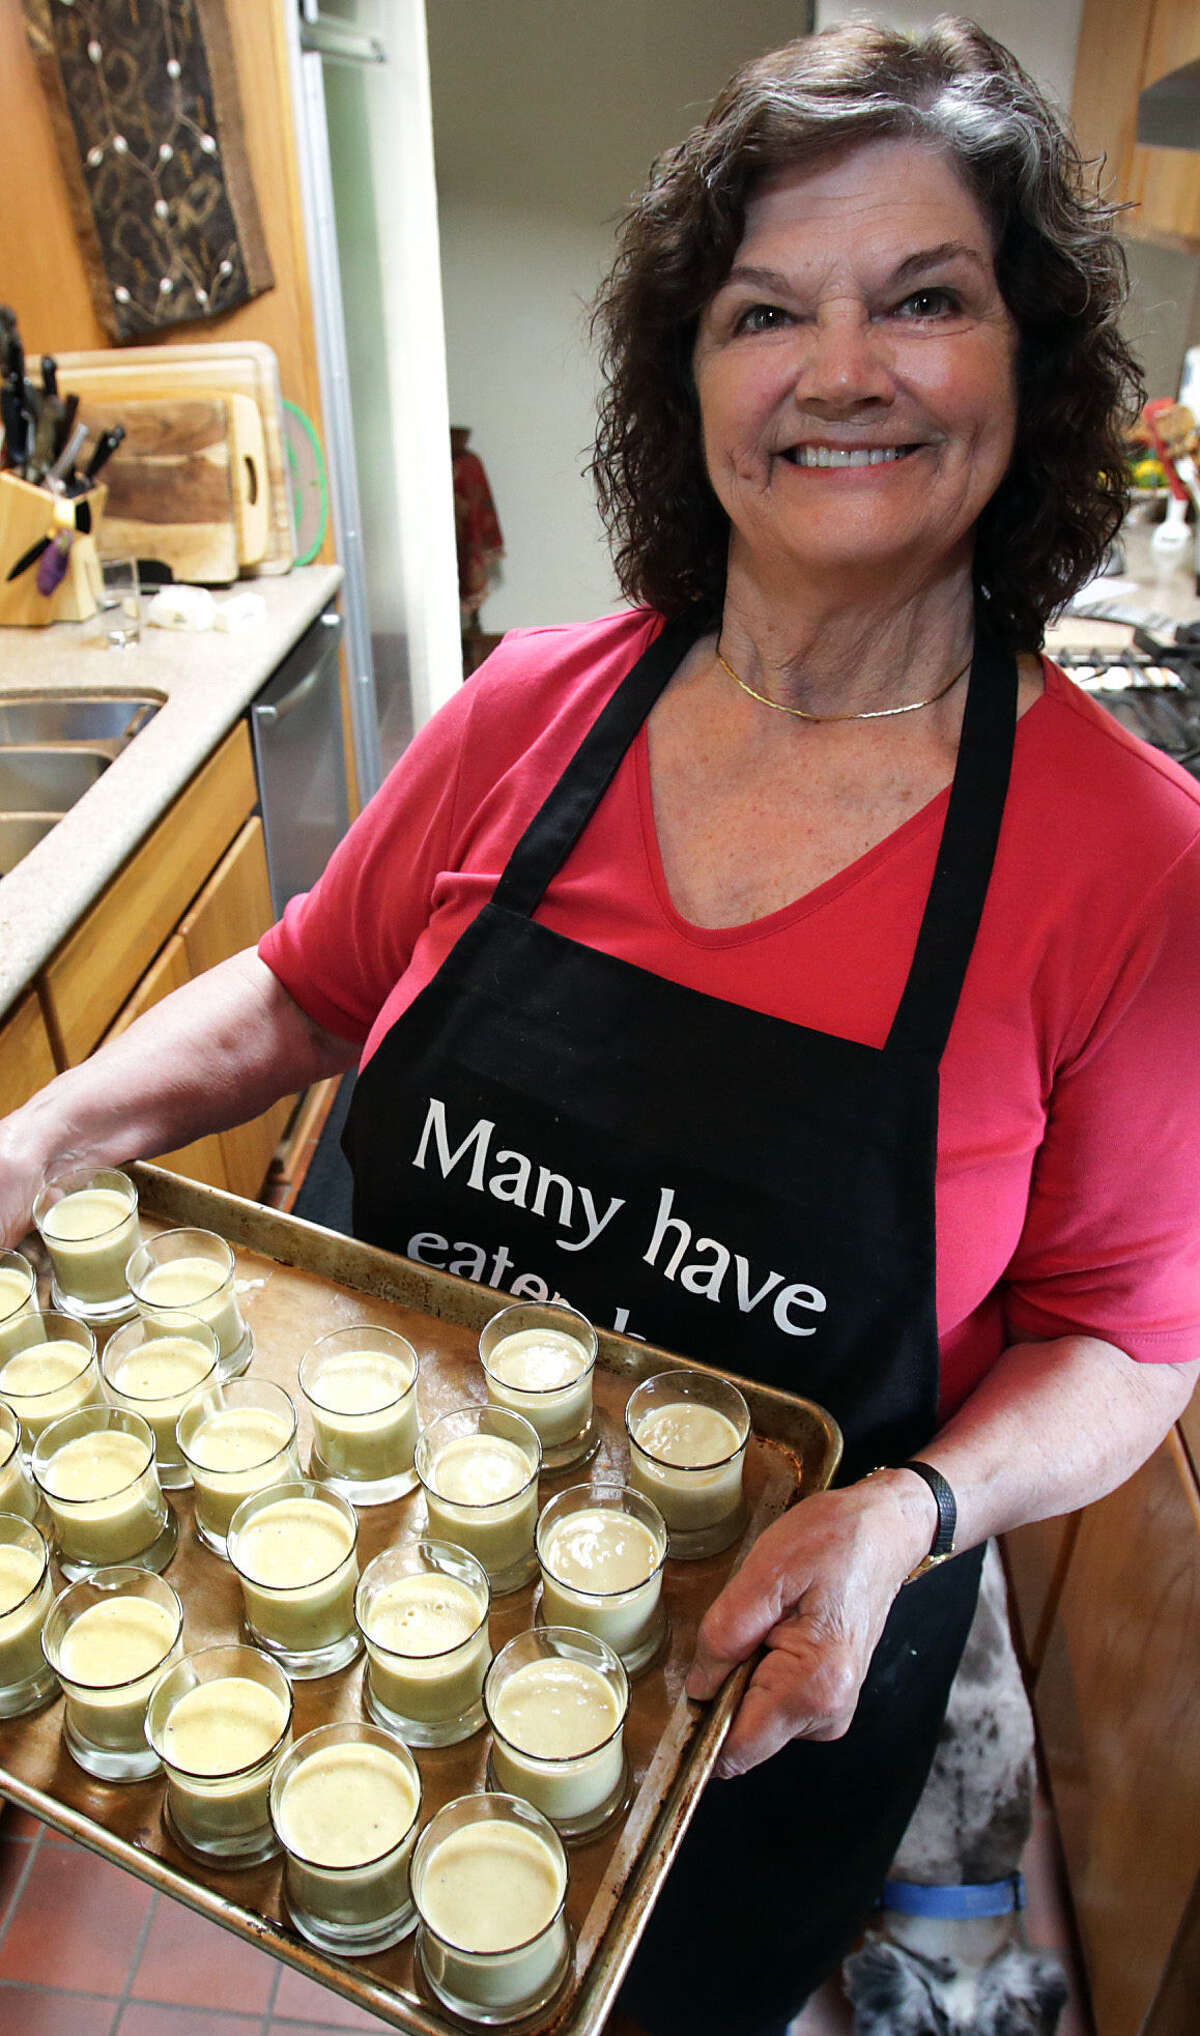 Marianne Anderson prepares individual banana custard desserts in her kitchen.